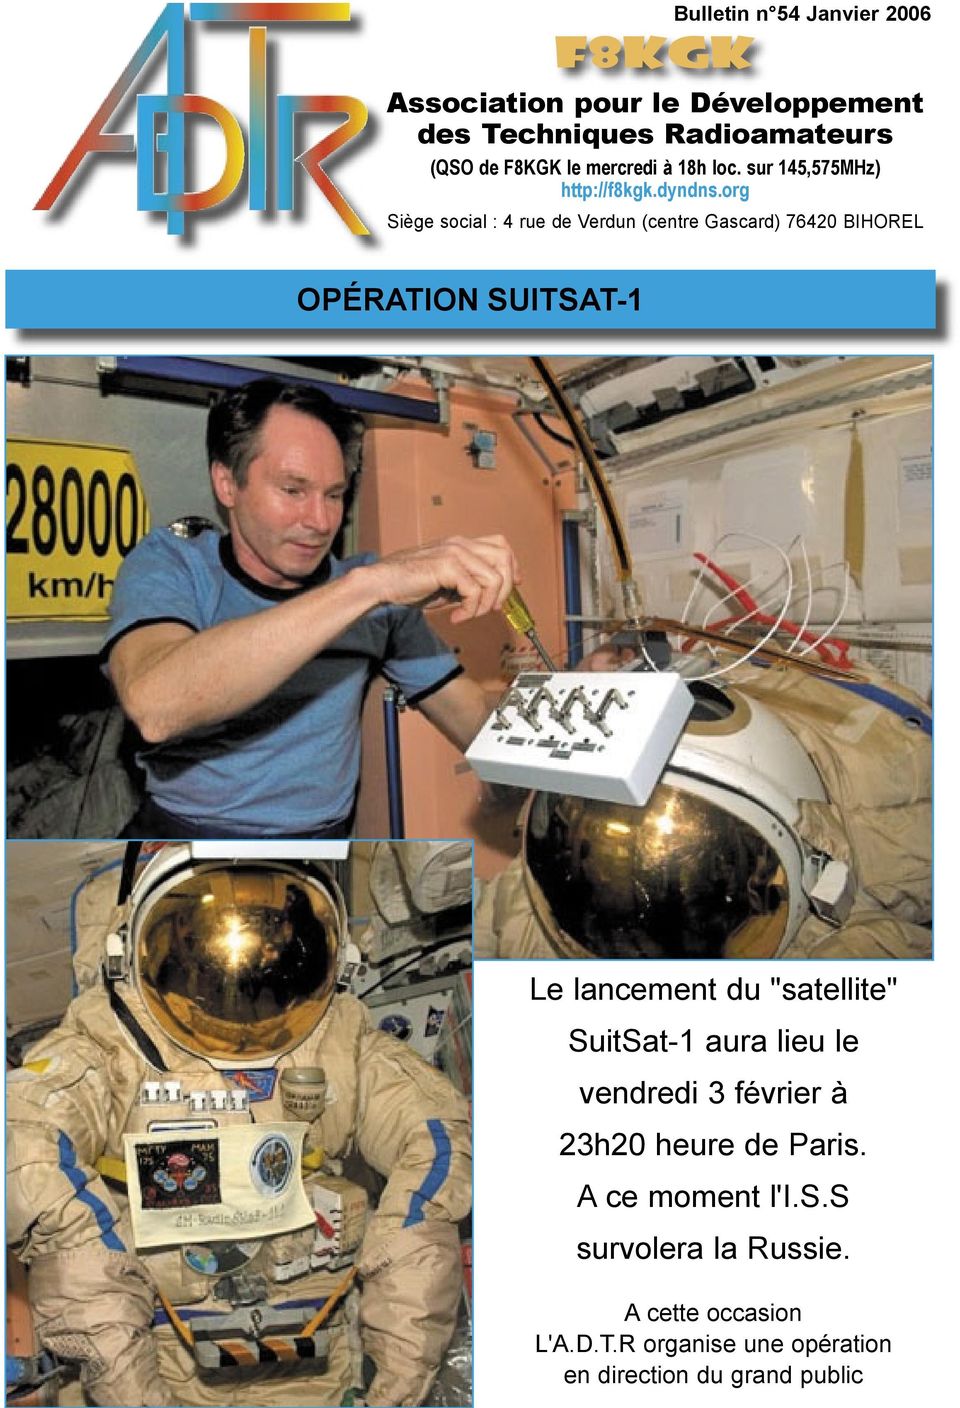 org iège social : 4 rue de Verdun (centre Gascard) 76420 BHO OPÉON -1 e lancement du "satellite" uitat-1